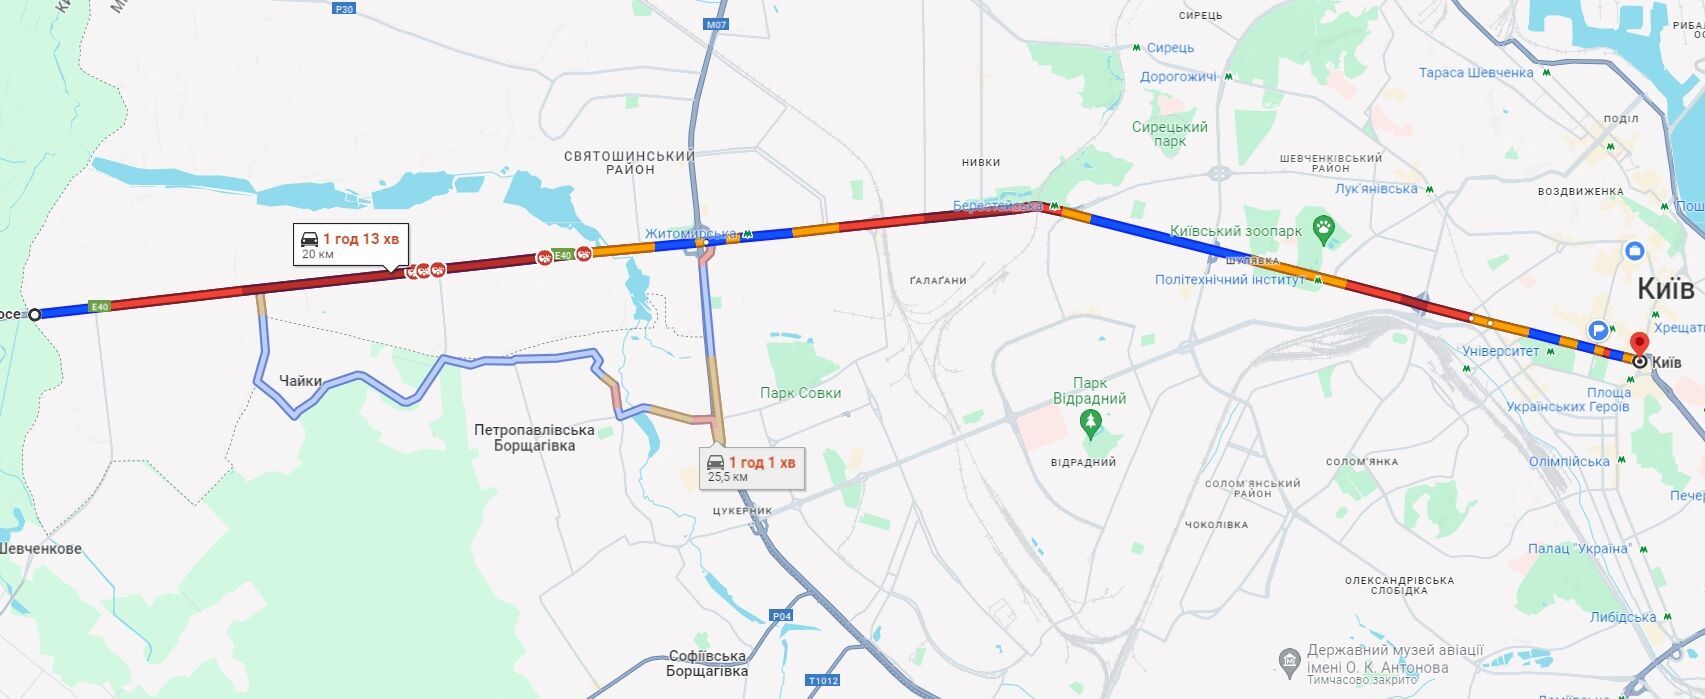 В Киеве образовались многочисленные пробки: где затруднено движение авто. Карта